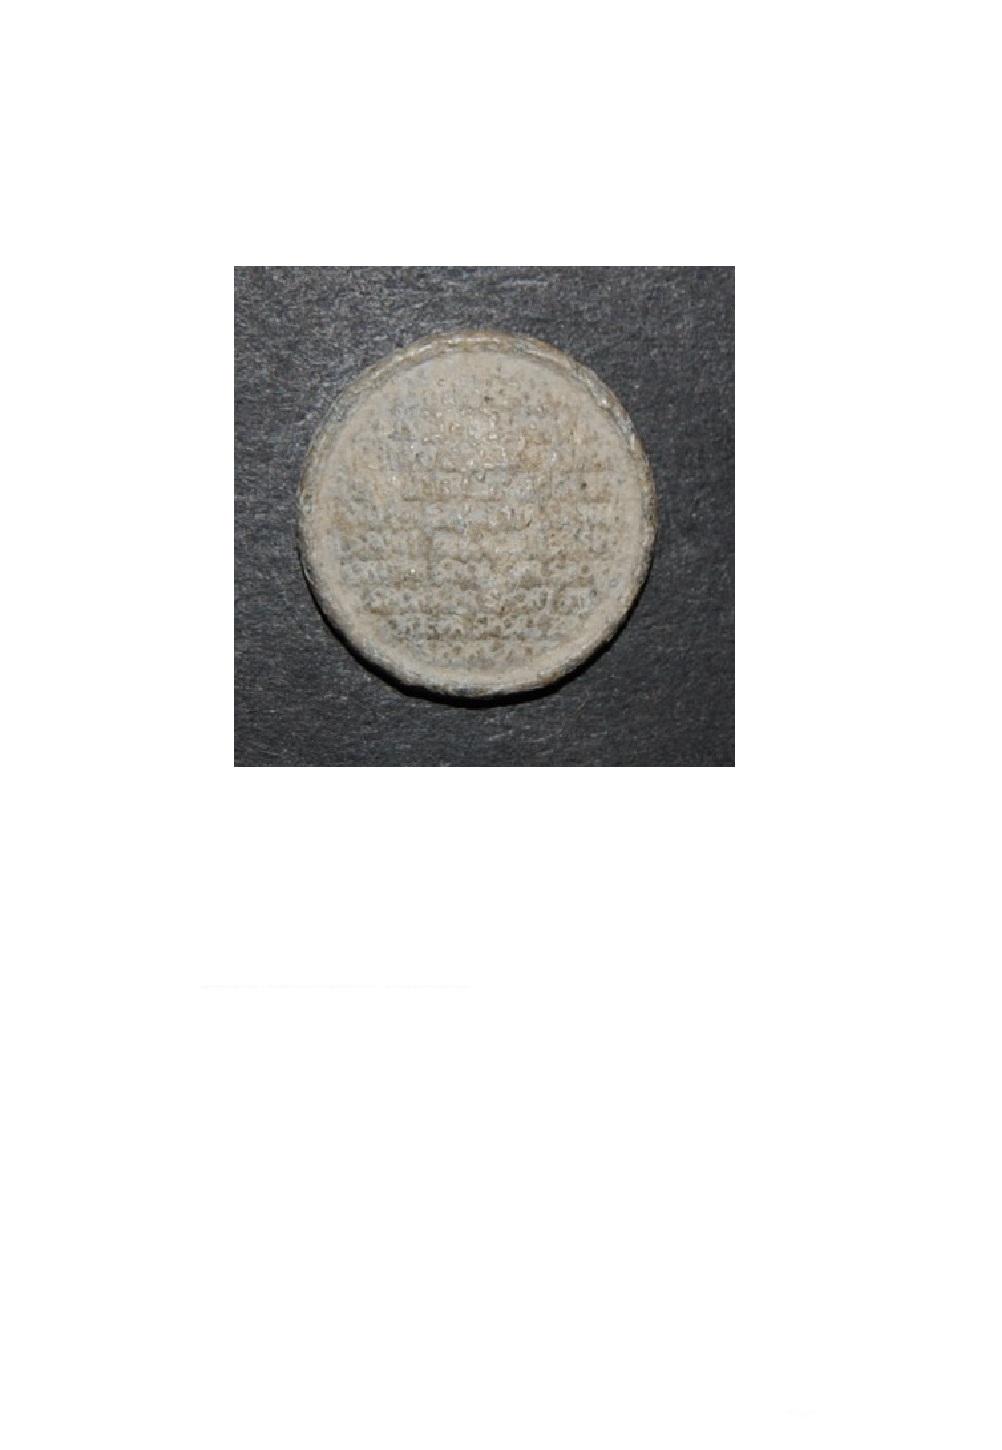 Botón decorado con leyenda en árabe 34b10